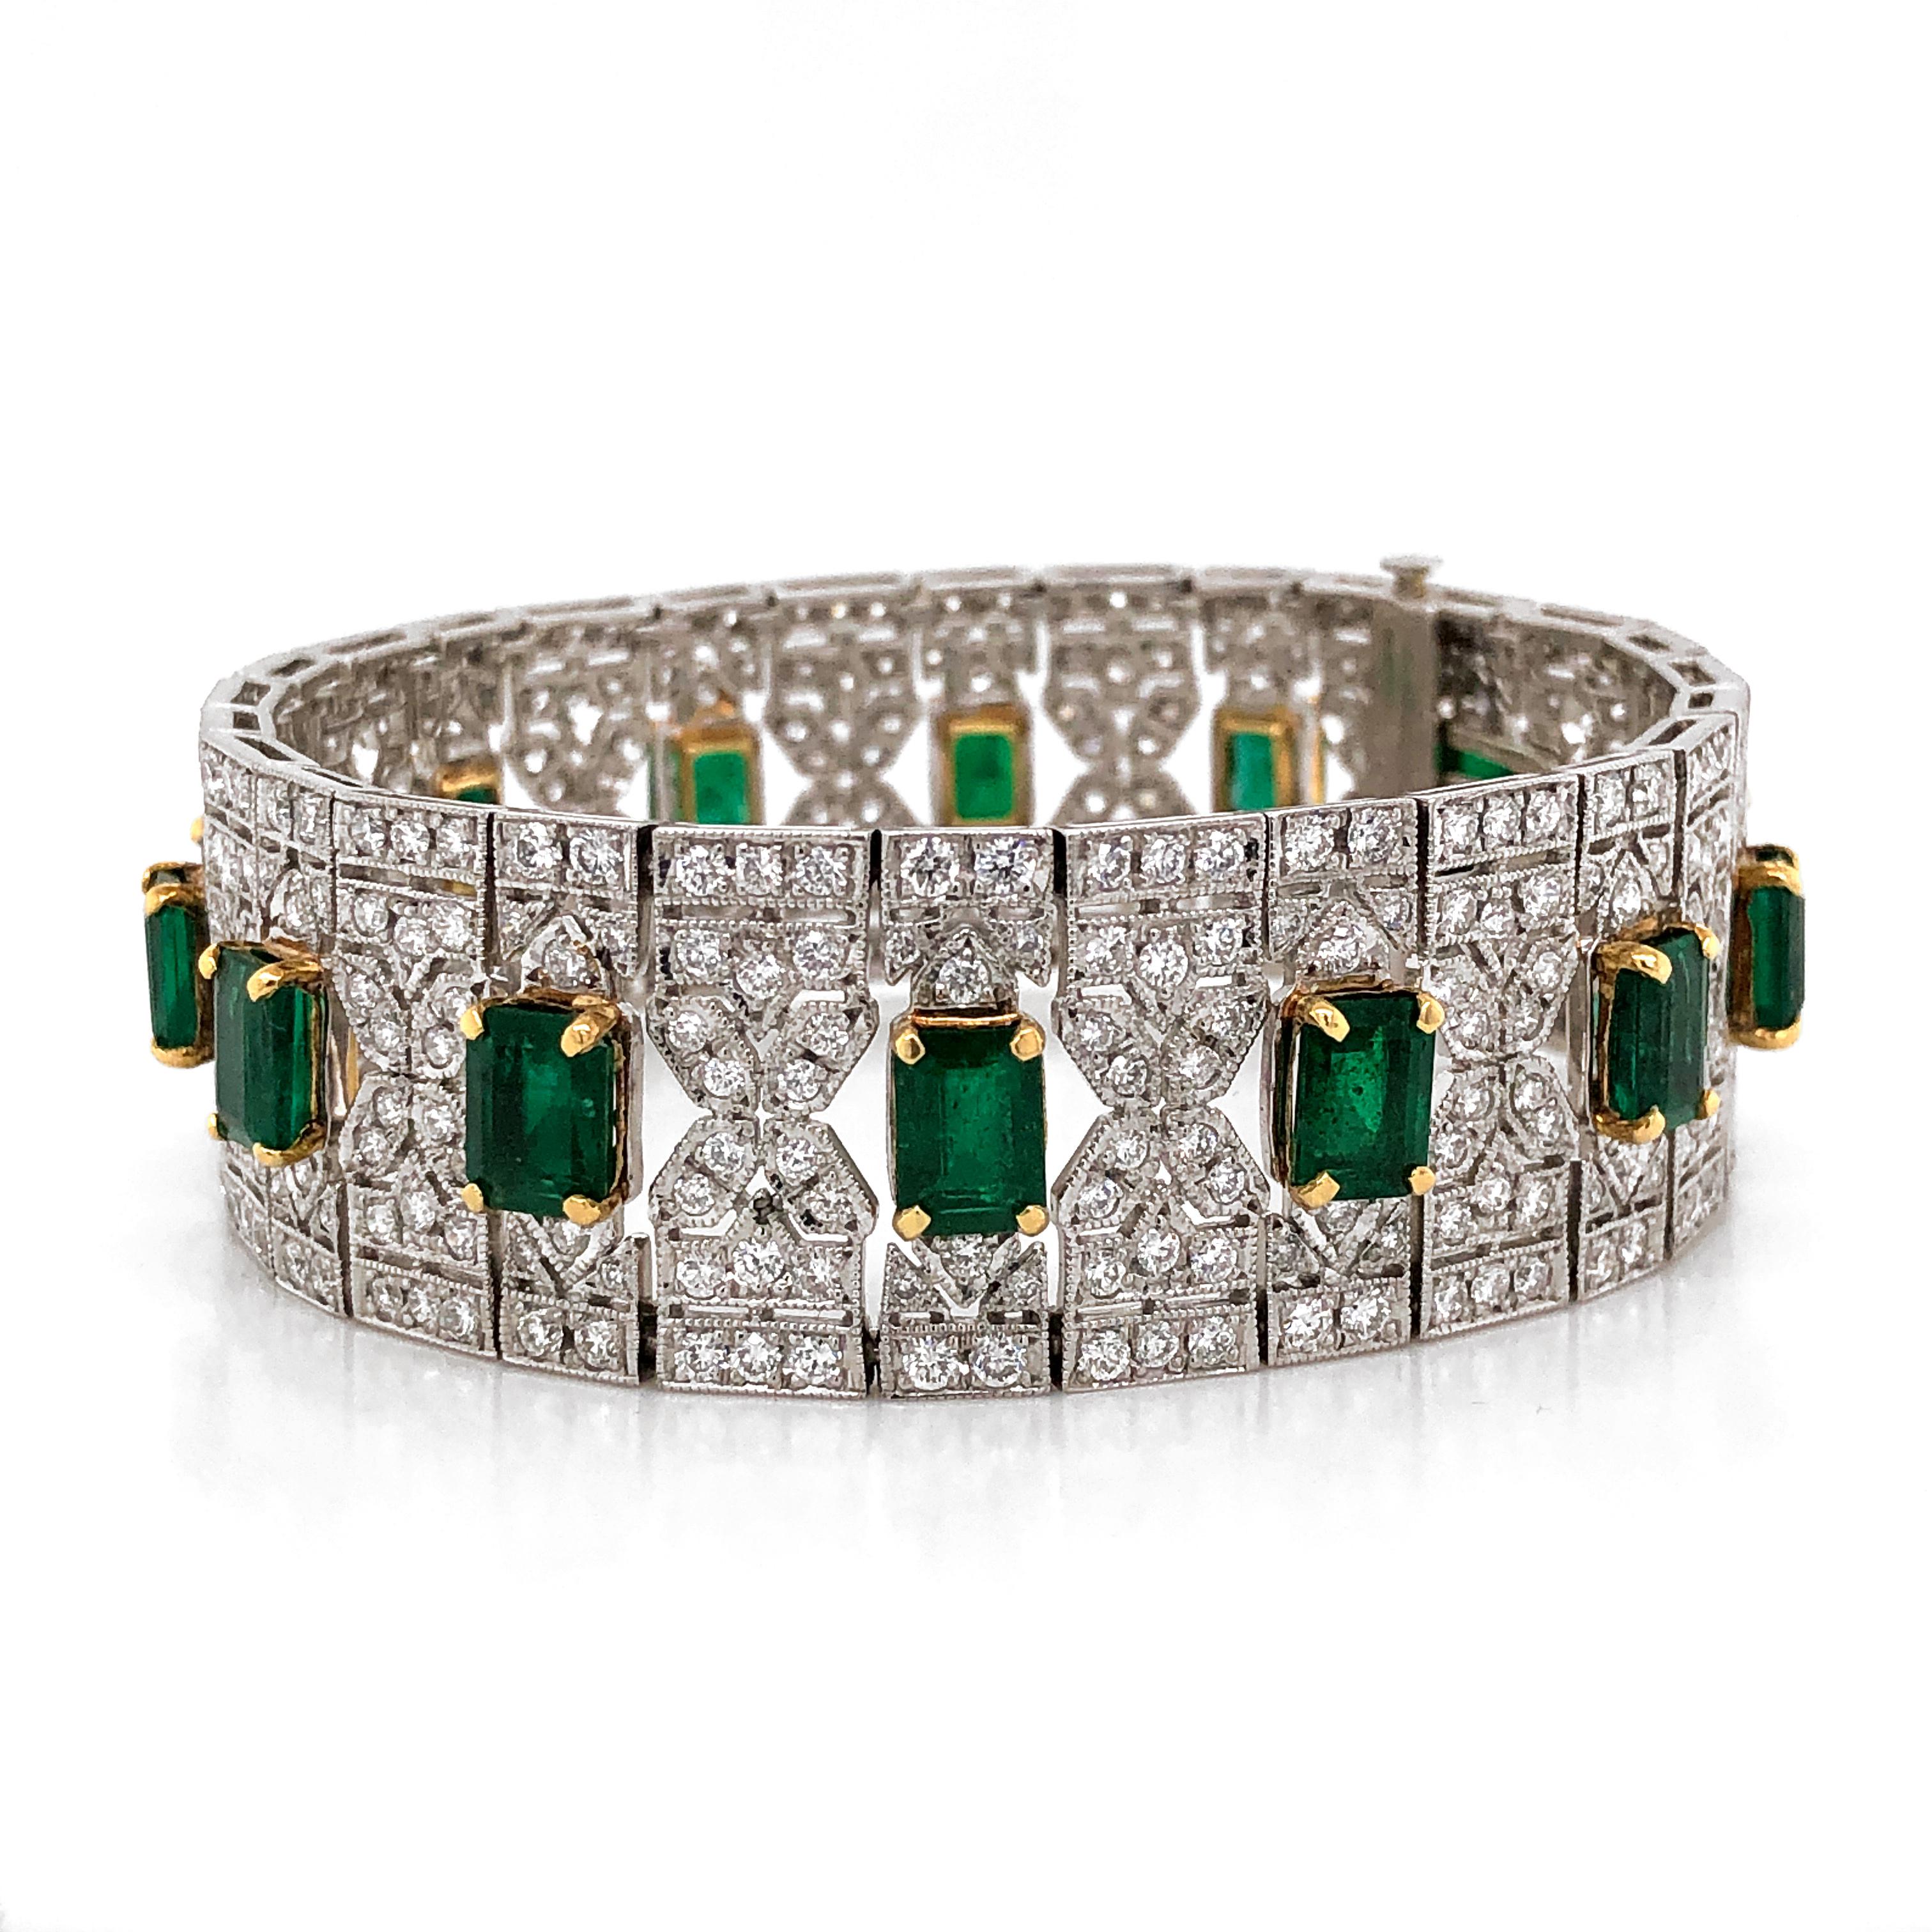 Contemporary Zambian Emerald Cut Emeralds 13.14 Carat 8.26 Carat Diamond Platinum Bracelet For Sale